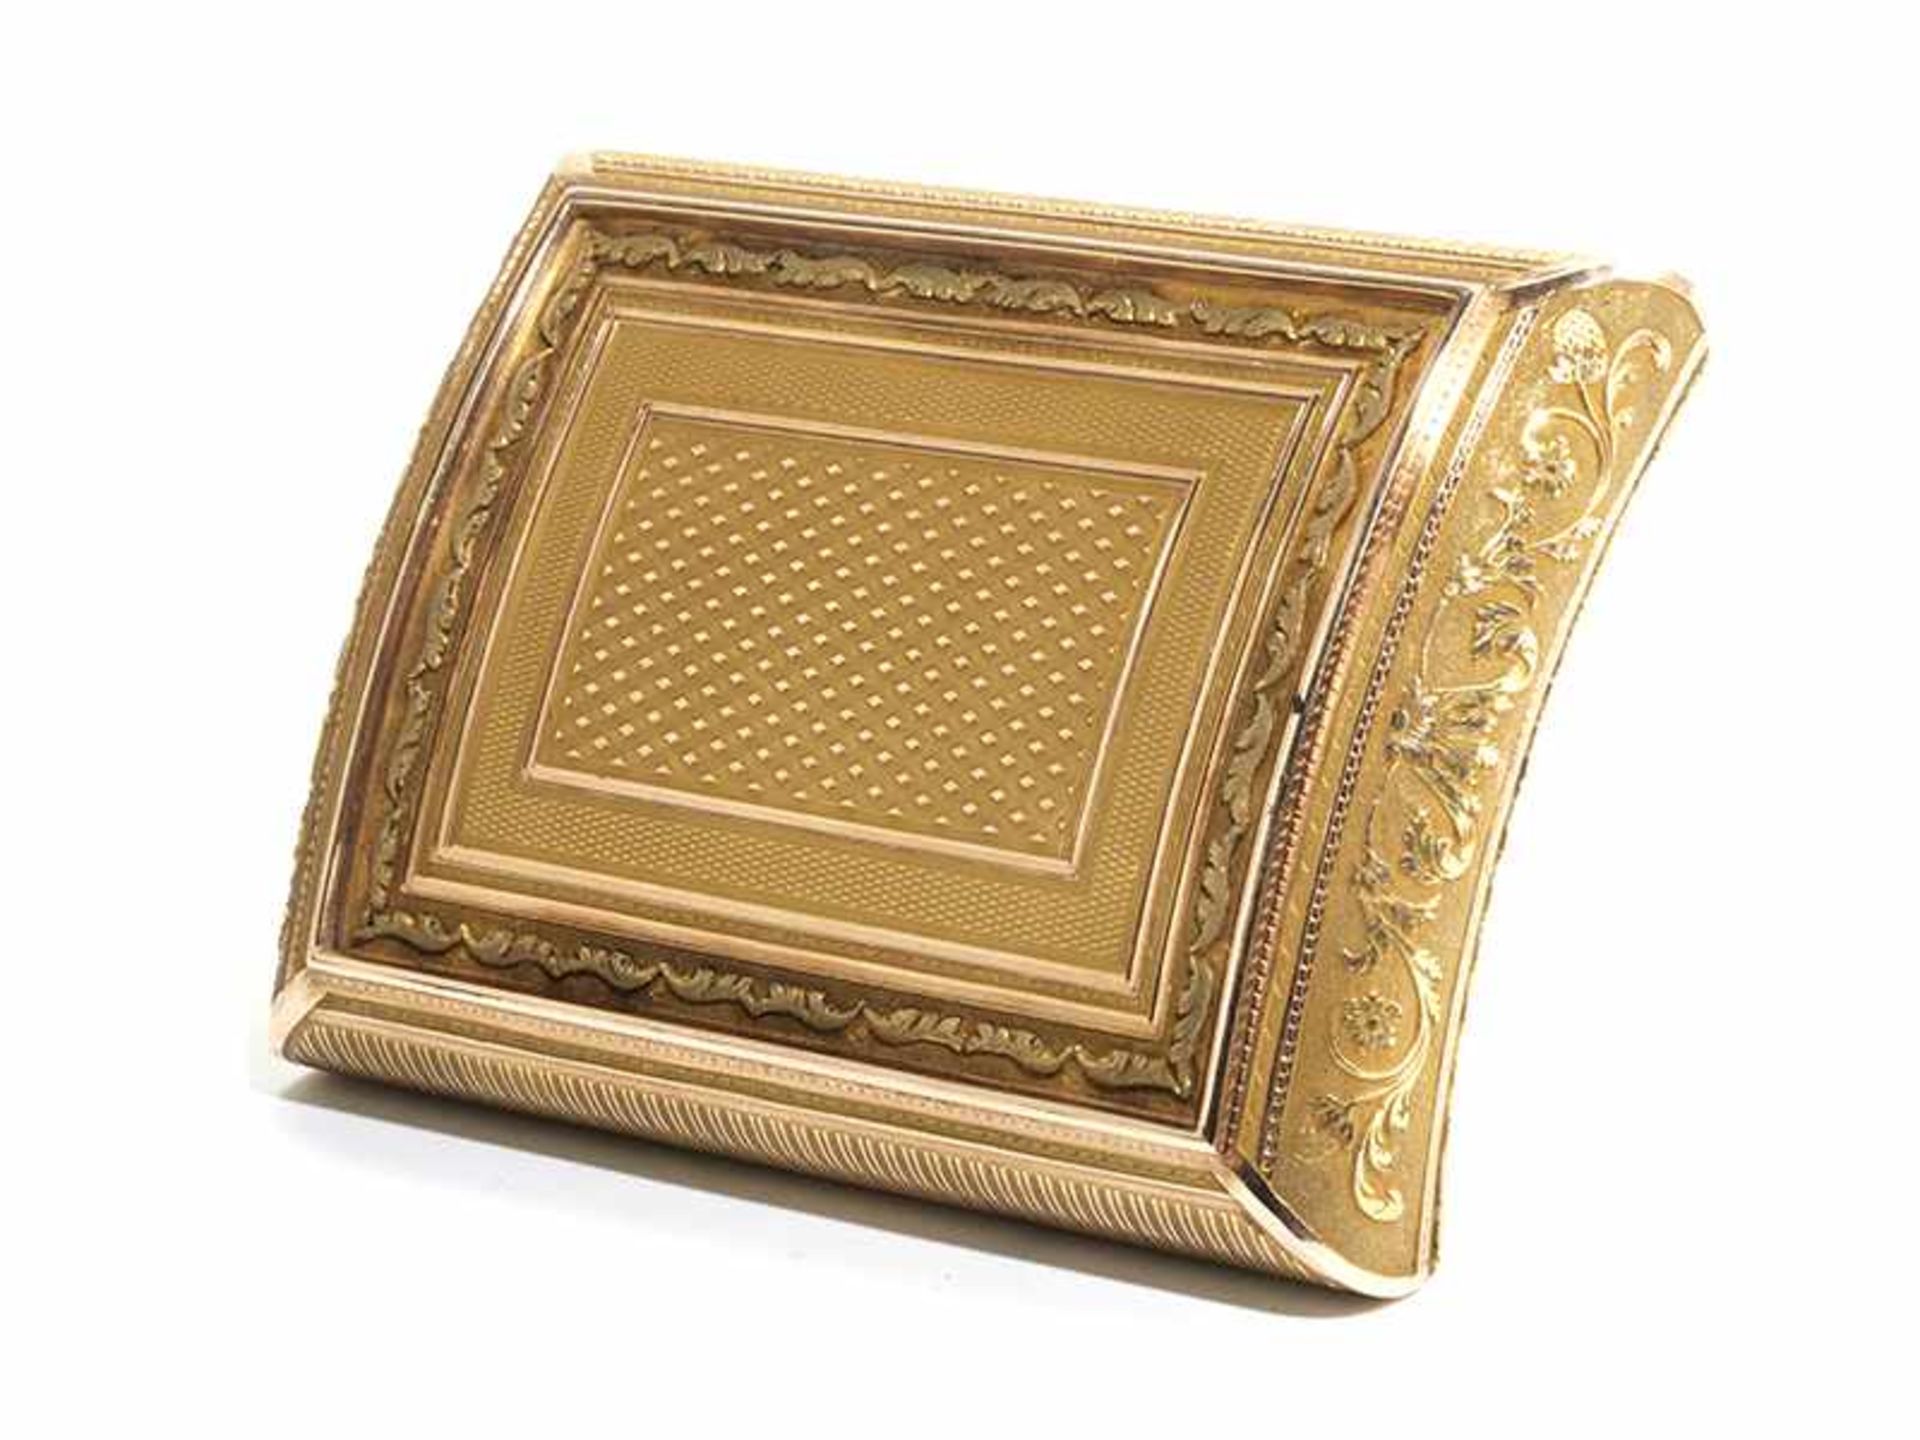 Golddose in Wiegenform 1,5 x 8 x 5,5 cm. Gewicht: 81 g. Boden und Deckel mit partiell verputzen - Bild 3 aus 7